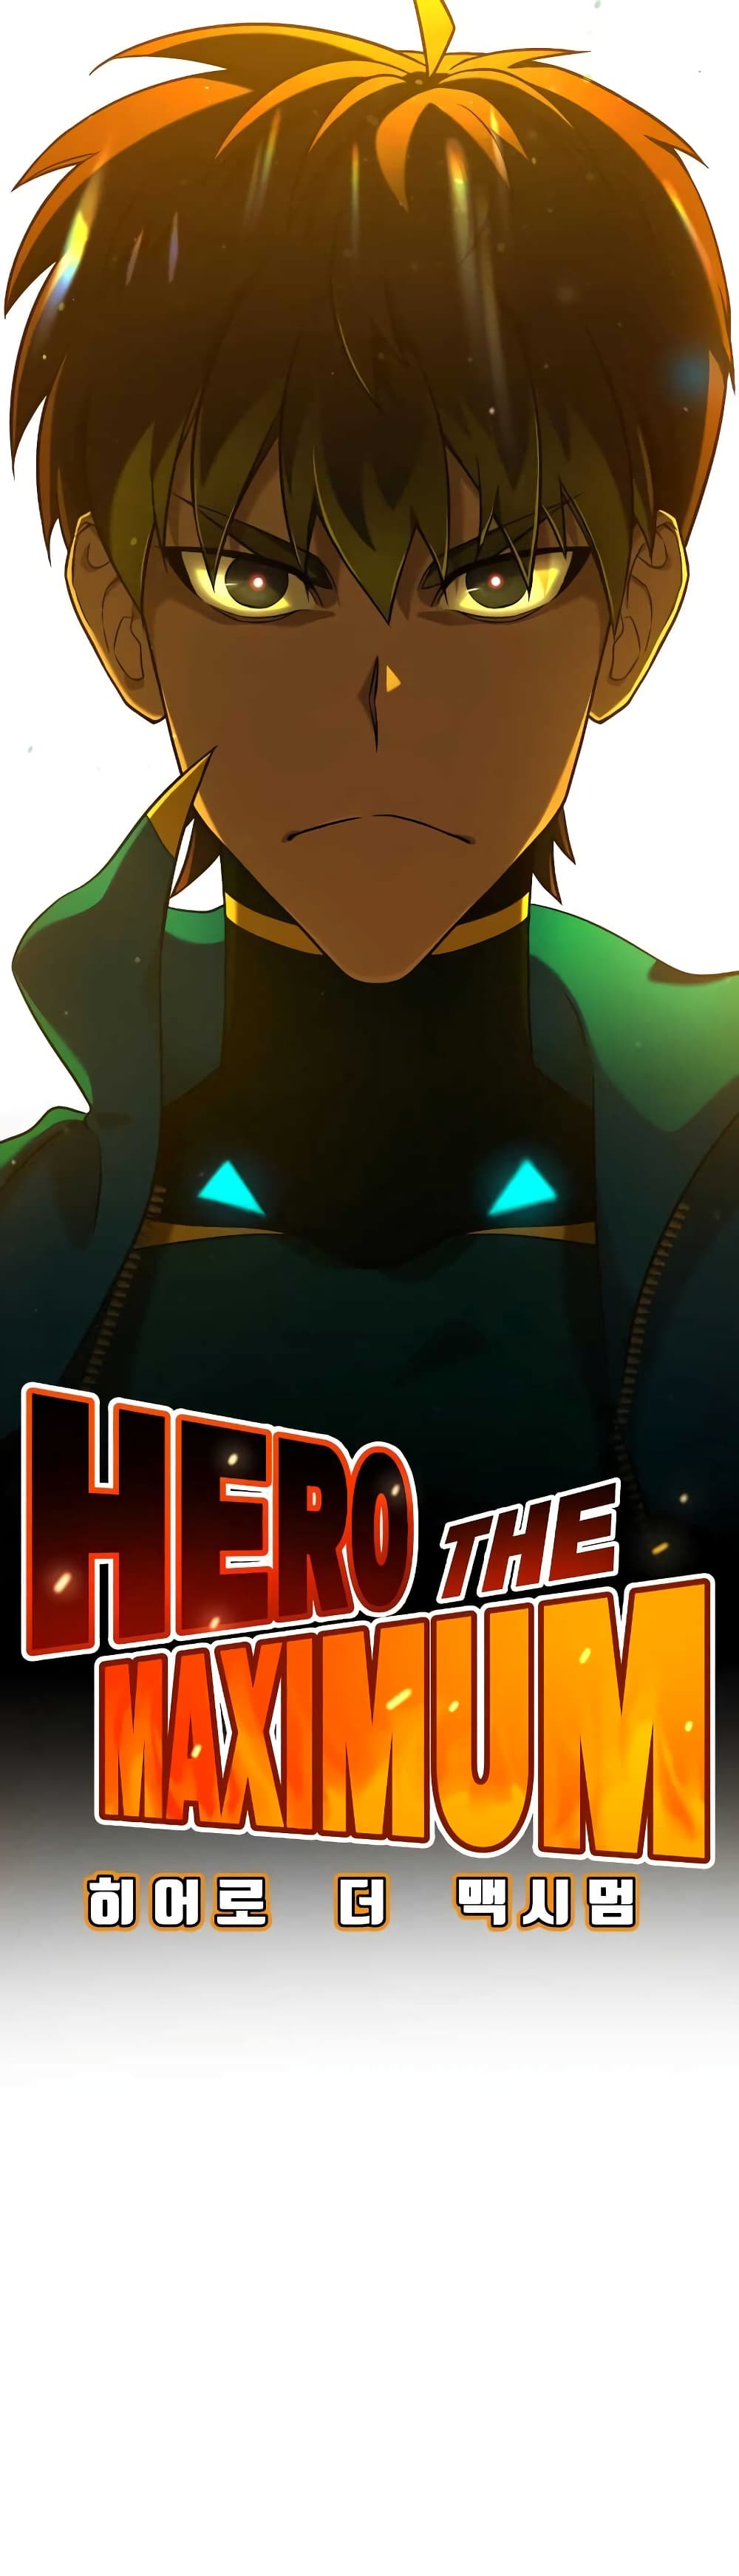 Hero the Maximum ตอนที่ 0 (40)